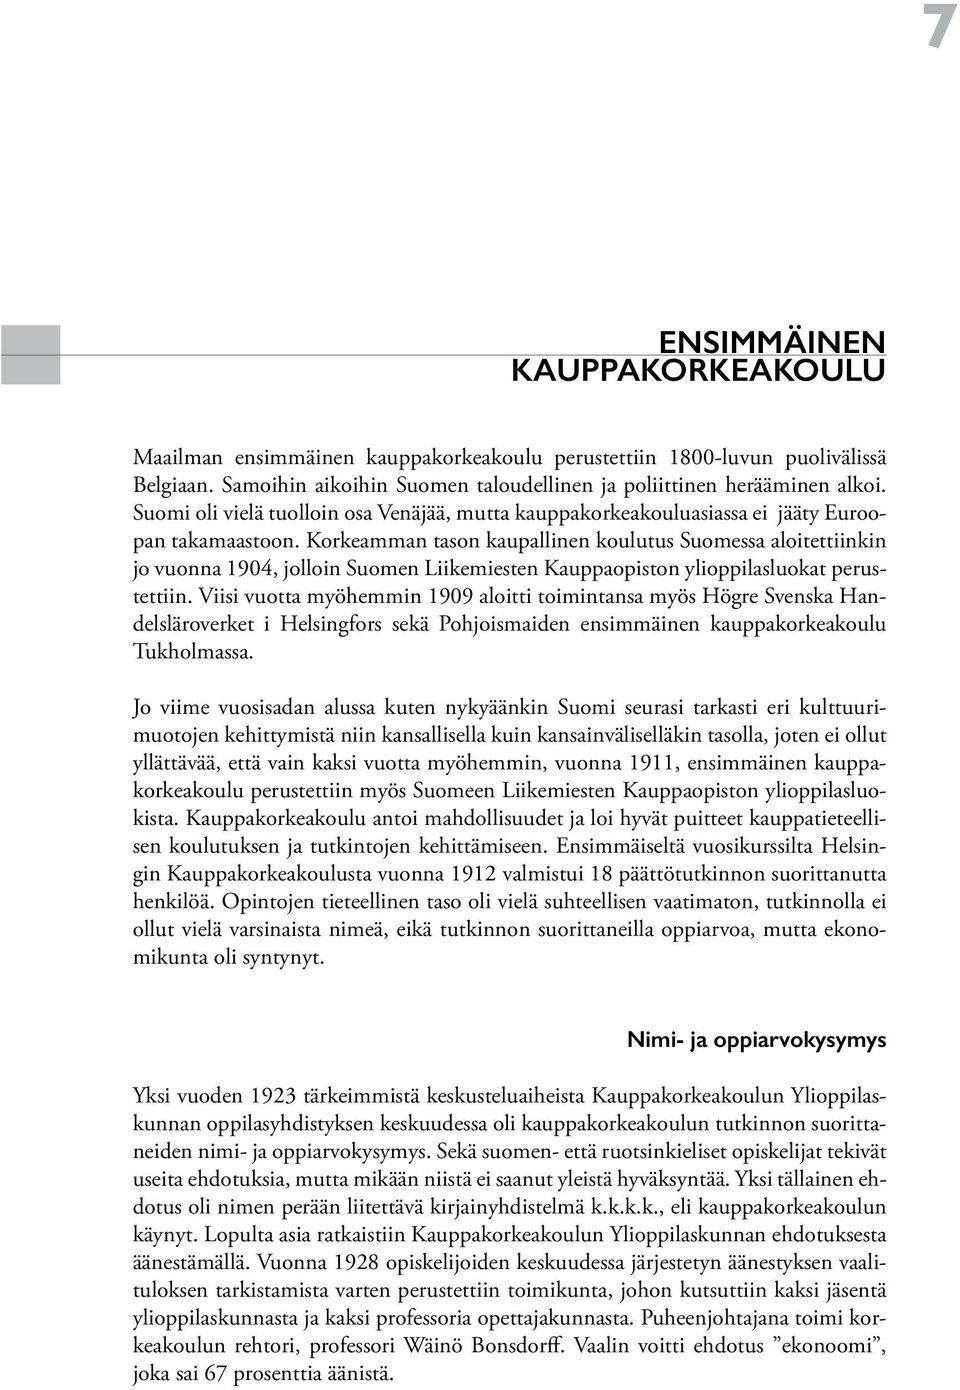 Korkeamman tason kaupallinen koulutus Suomessa aloitettiinkin jo vuonna 1904, jolloin Suomen Liikemiesten Kauppaopiston ylioppilasluokat perustettiin.